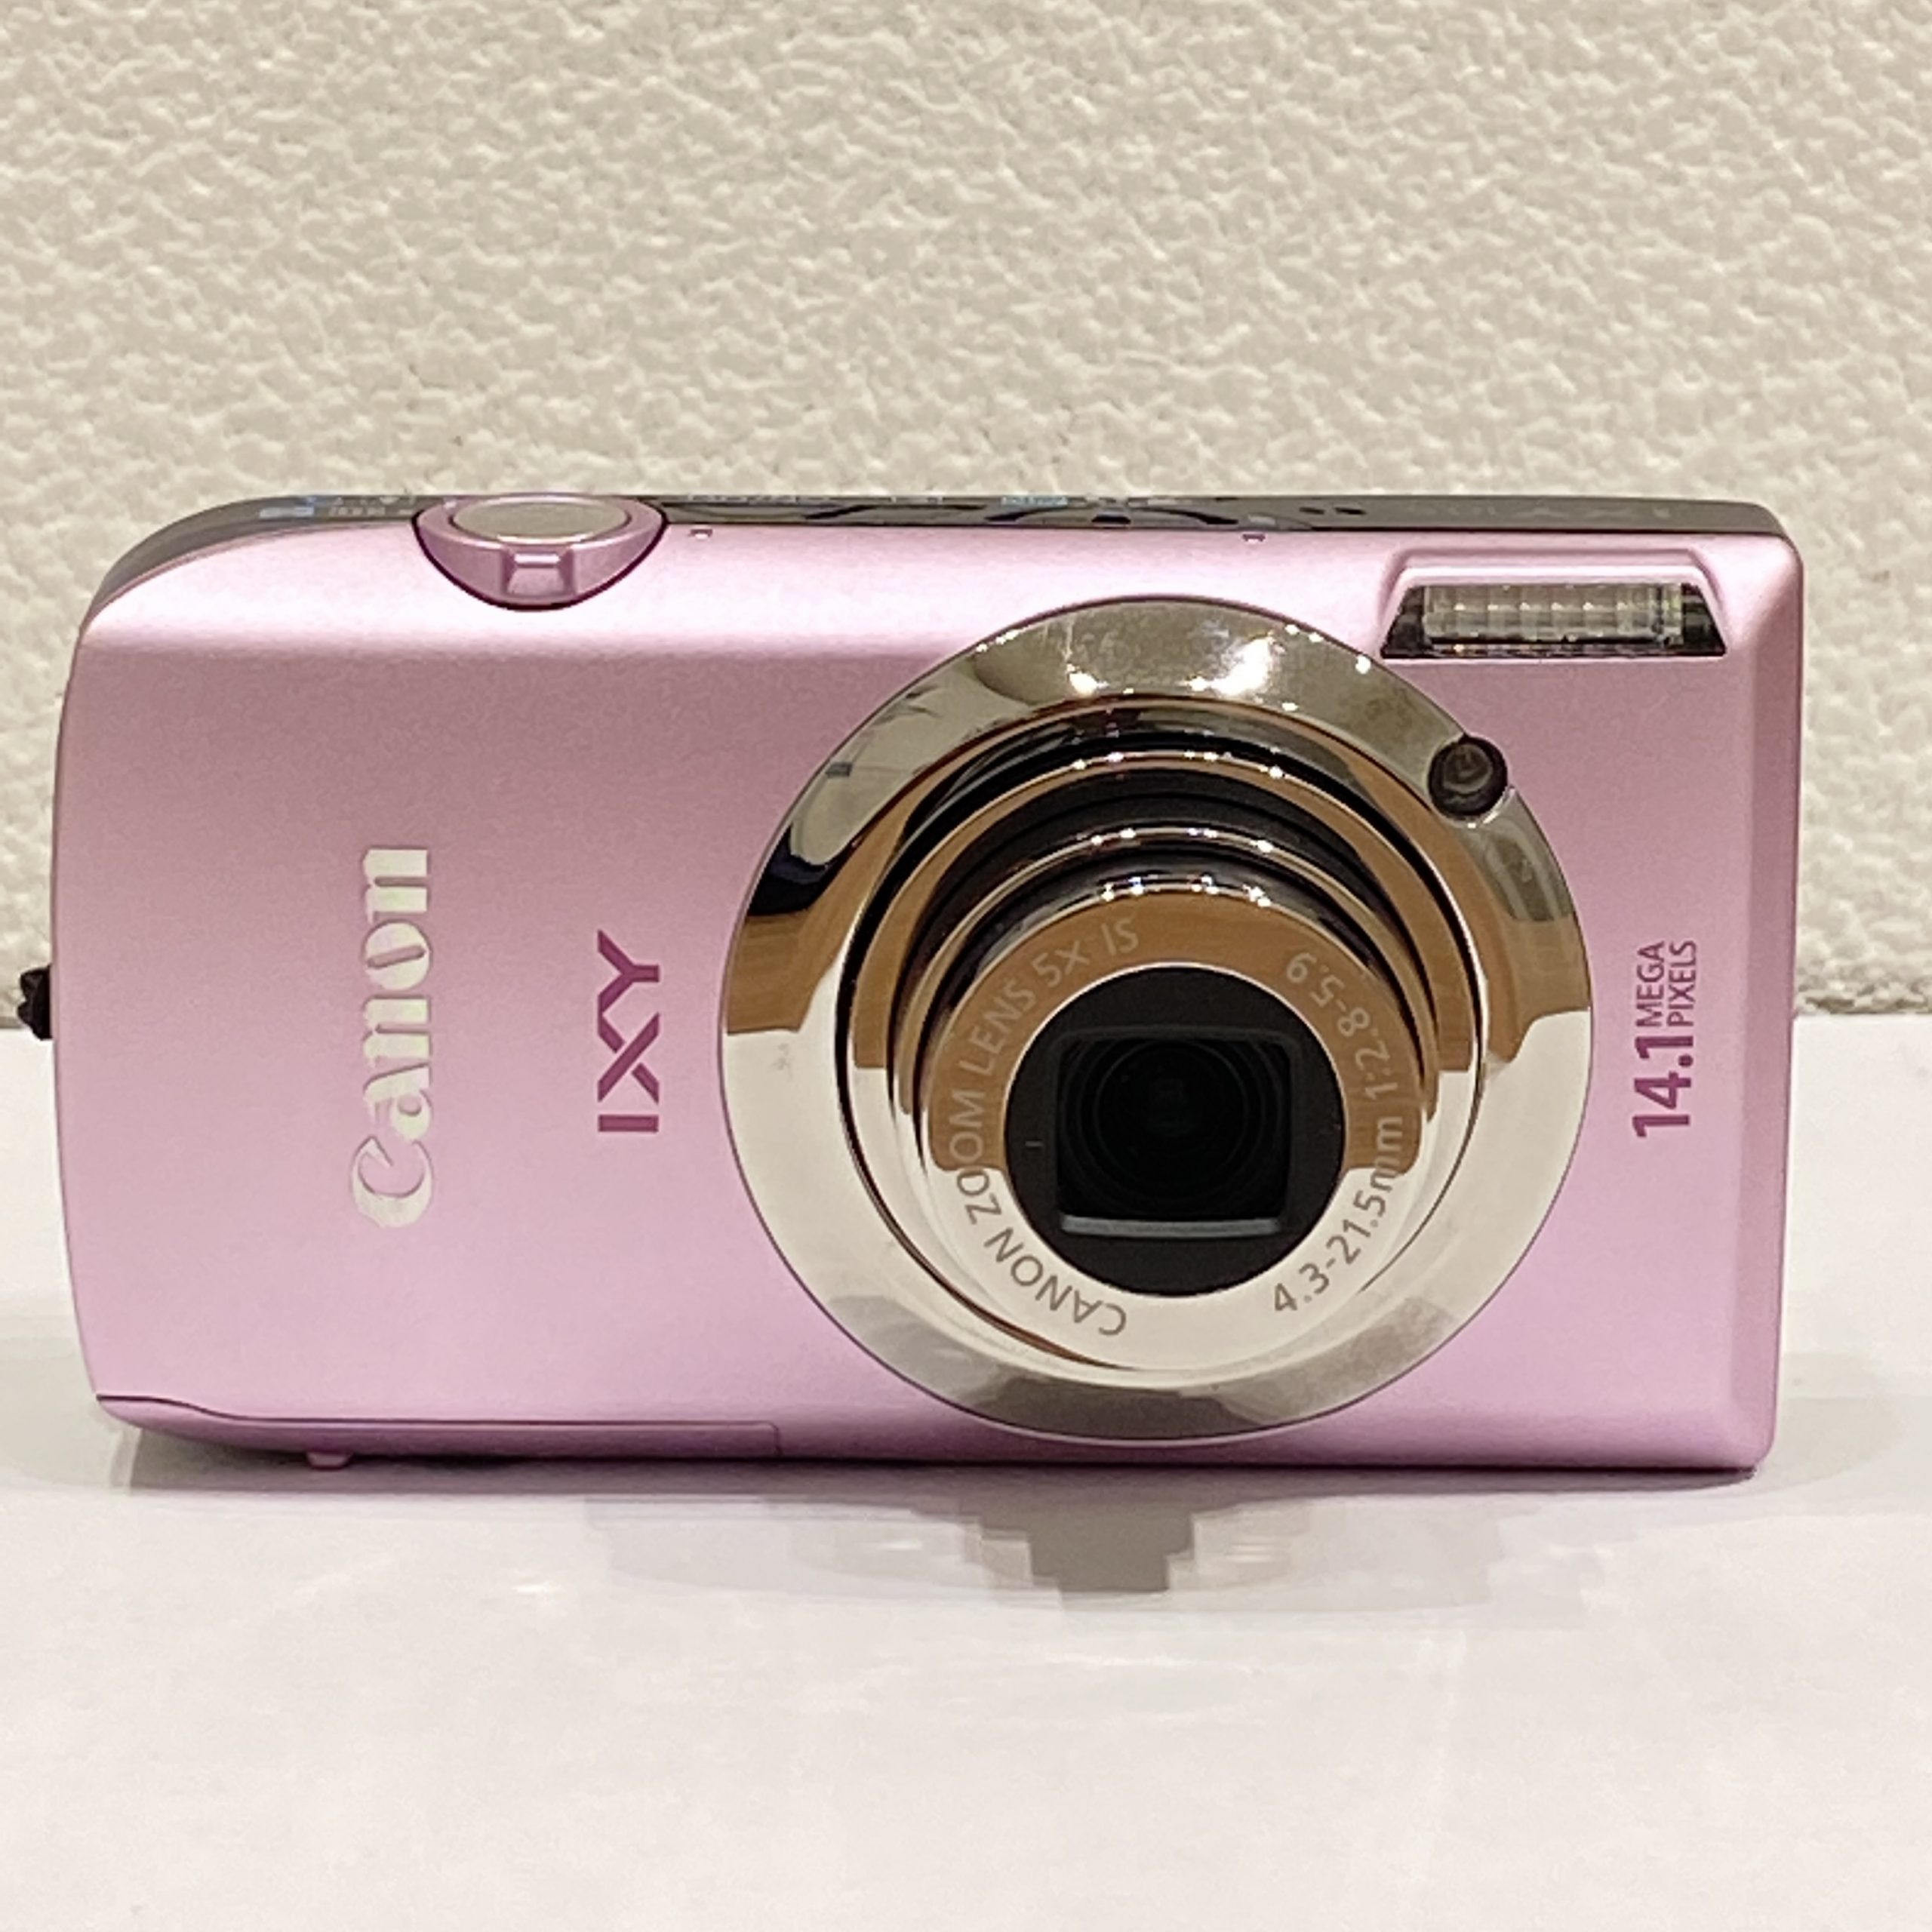 【Canon/キャノン】IXY 10 S コンパクトデジタルカメラ 4.3-21.5mm 1:2.8-5.9